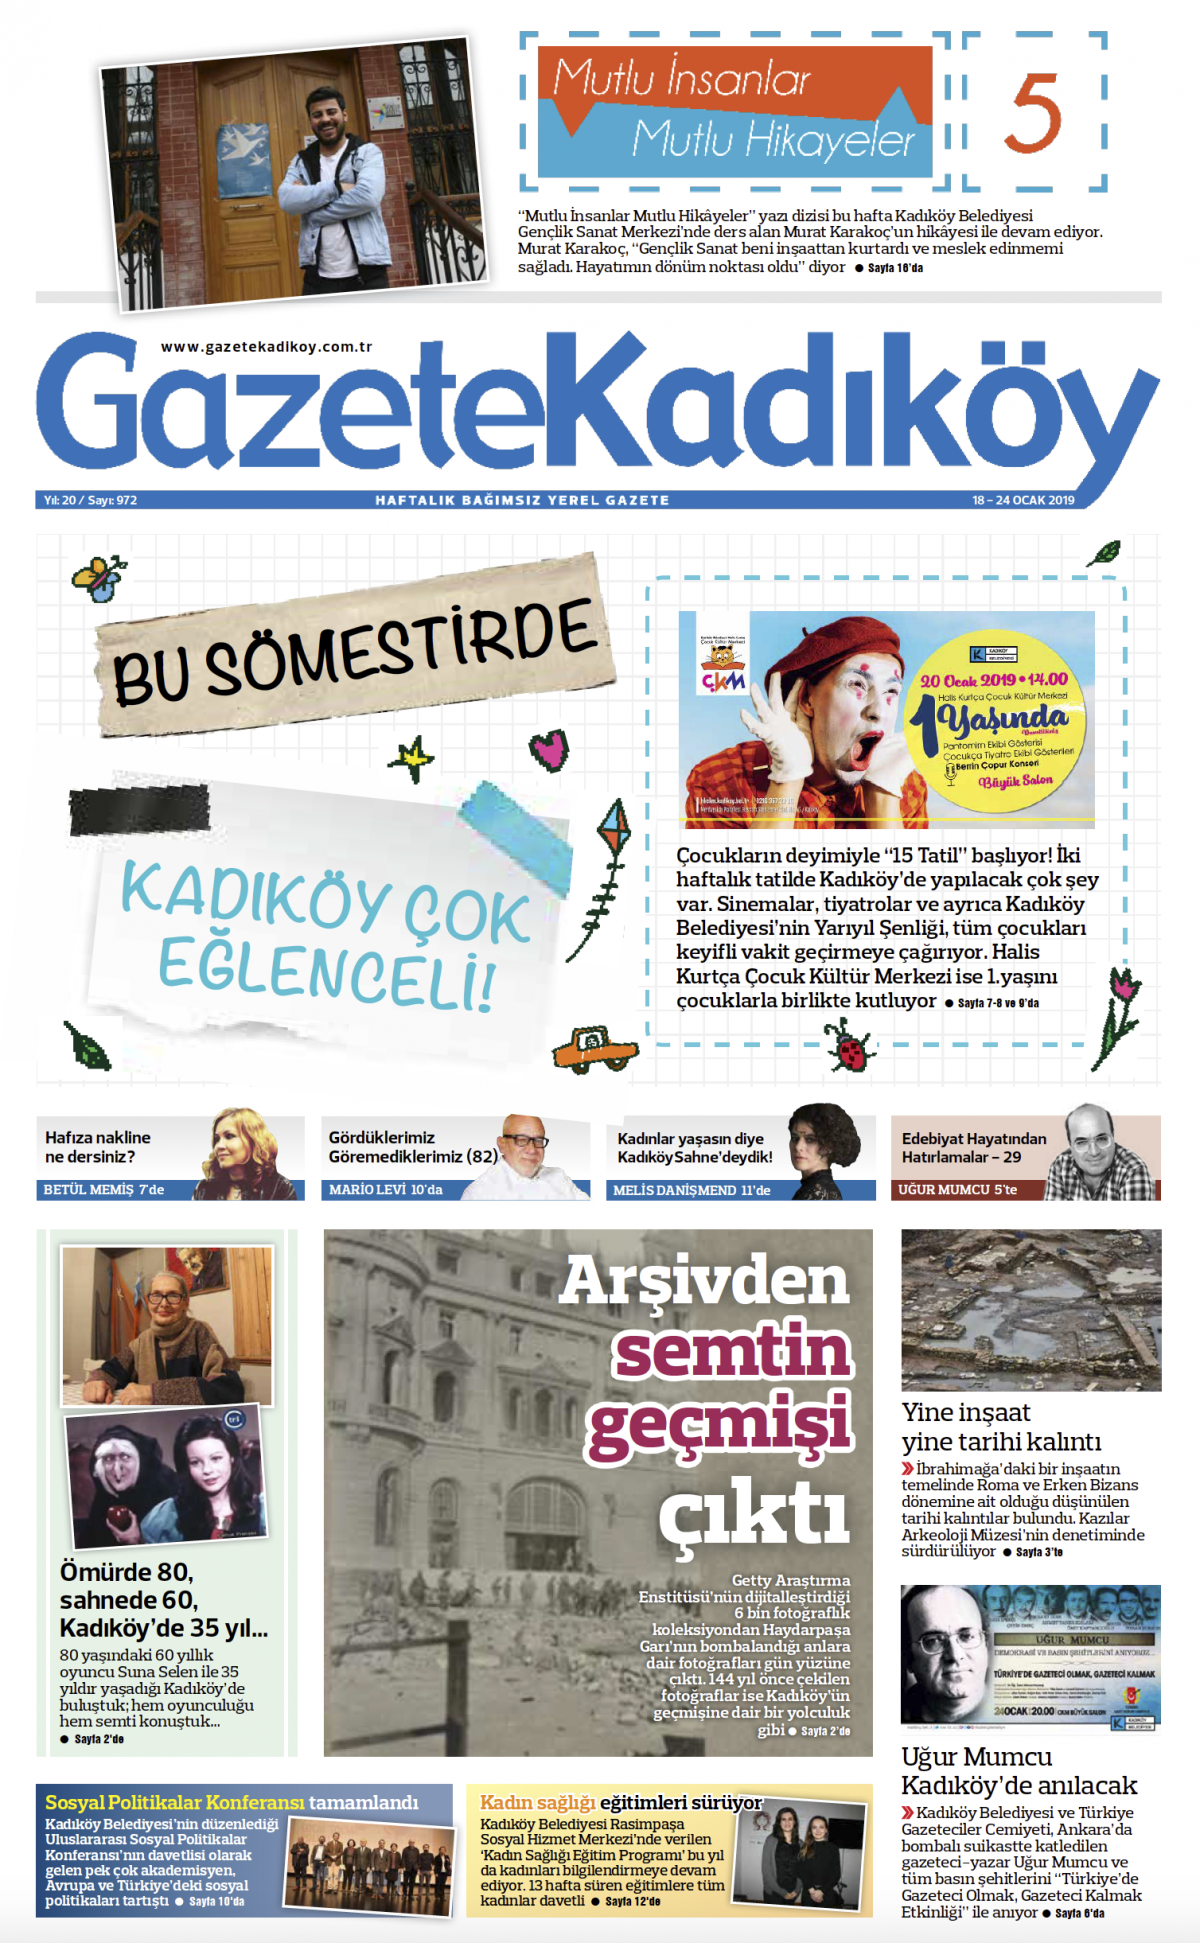 Gazete Kadıköy - 972. SAYI